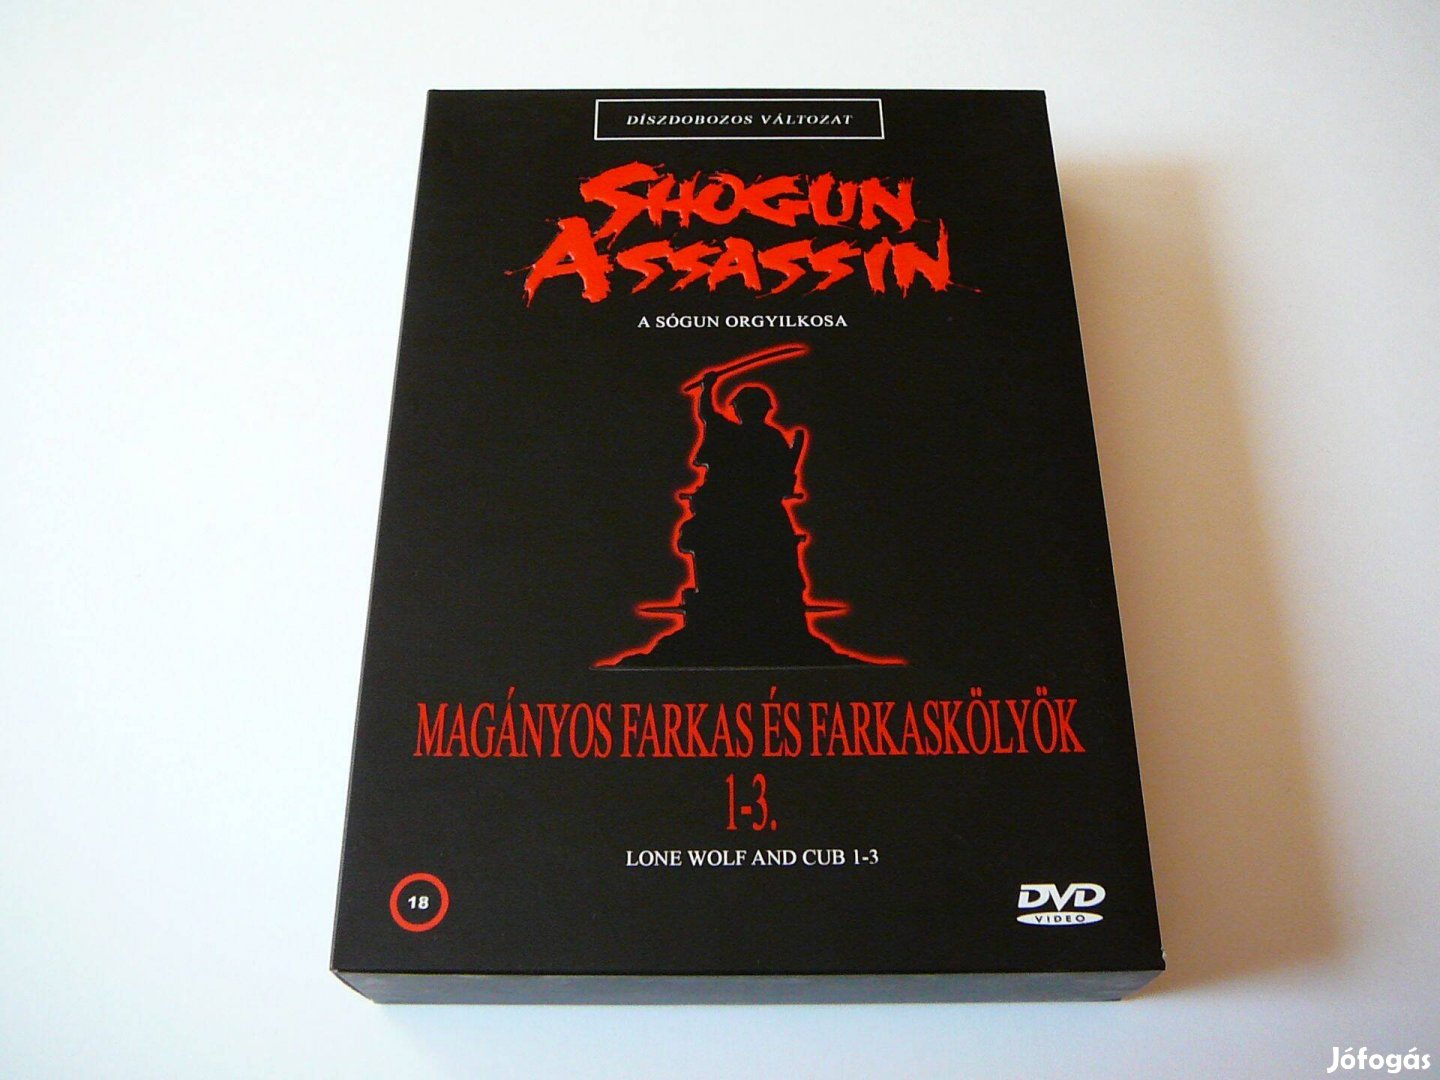 A Sógun orgyilkosa - A magányos farkas és farkaskölyök 1-3. DVD Film